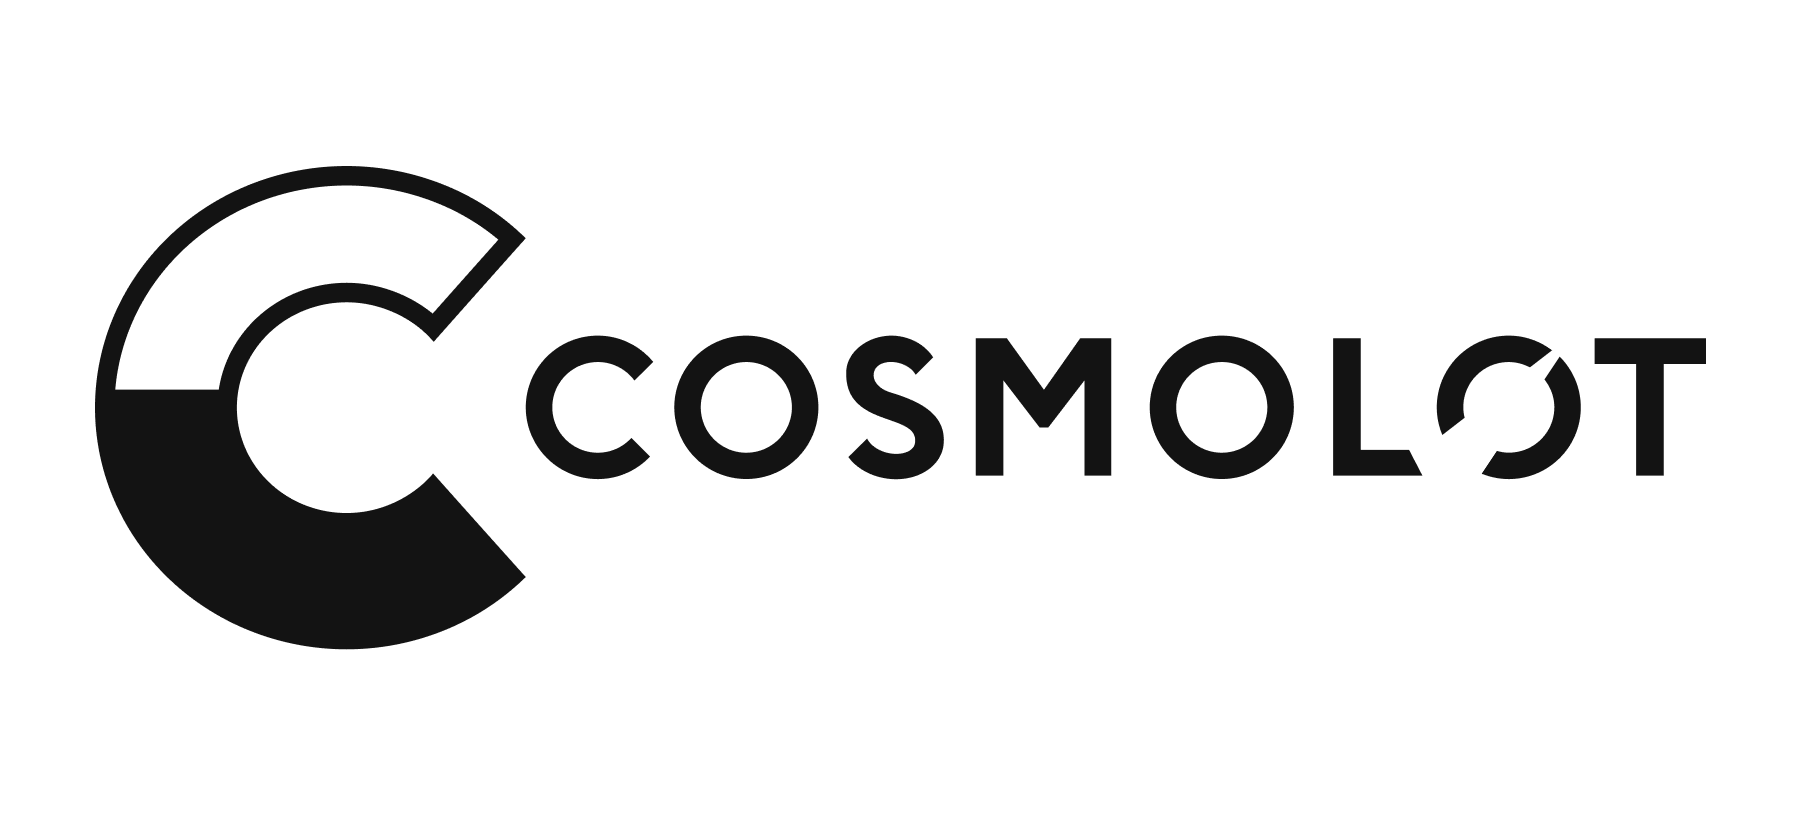 cosmolot.png